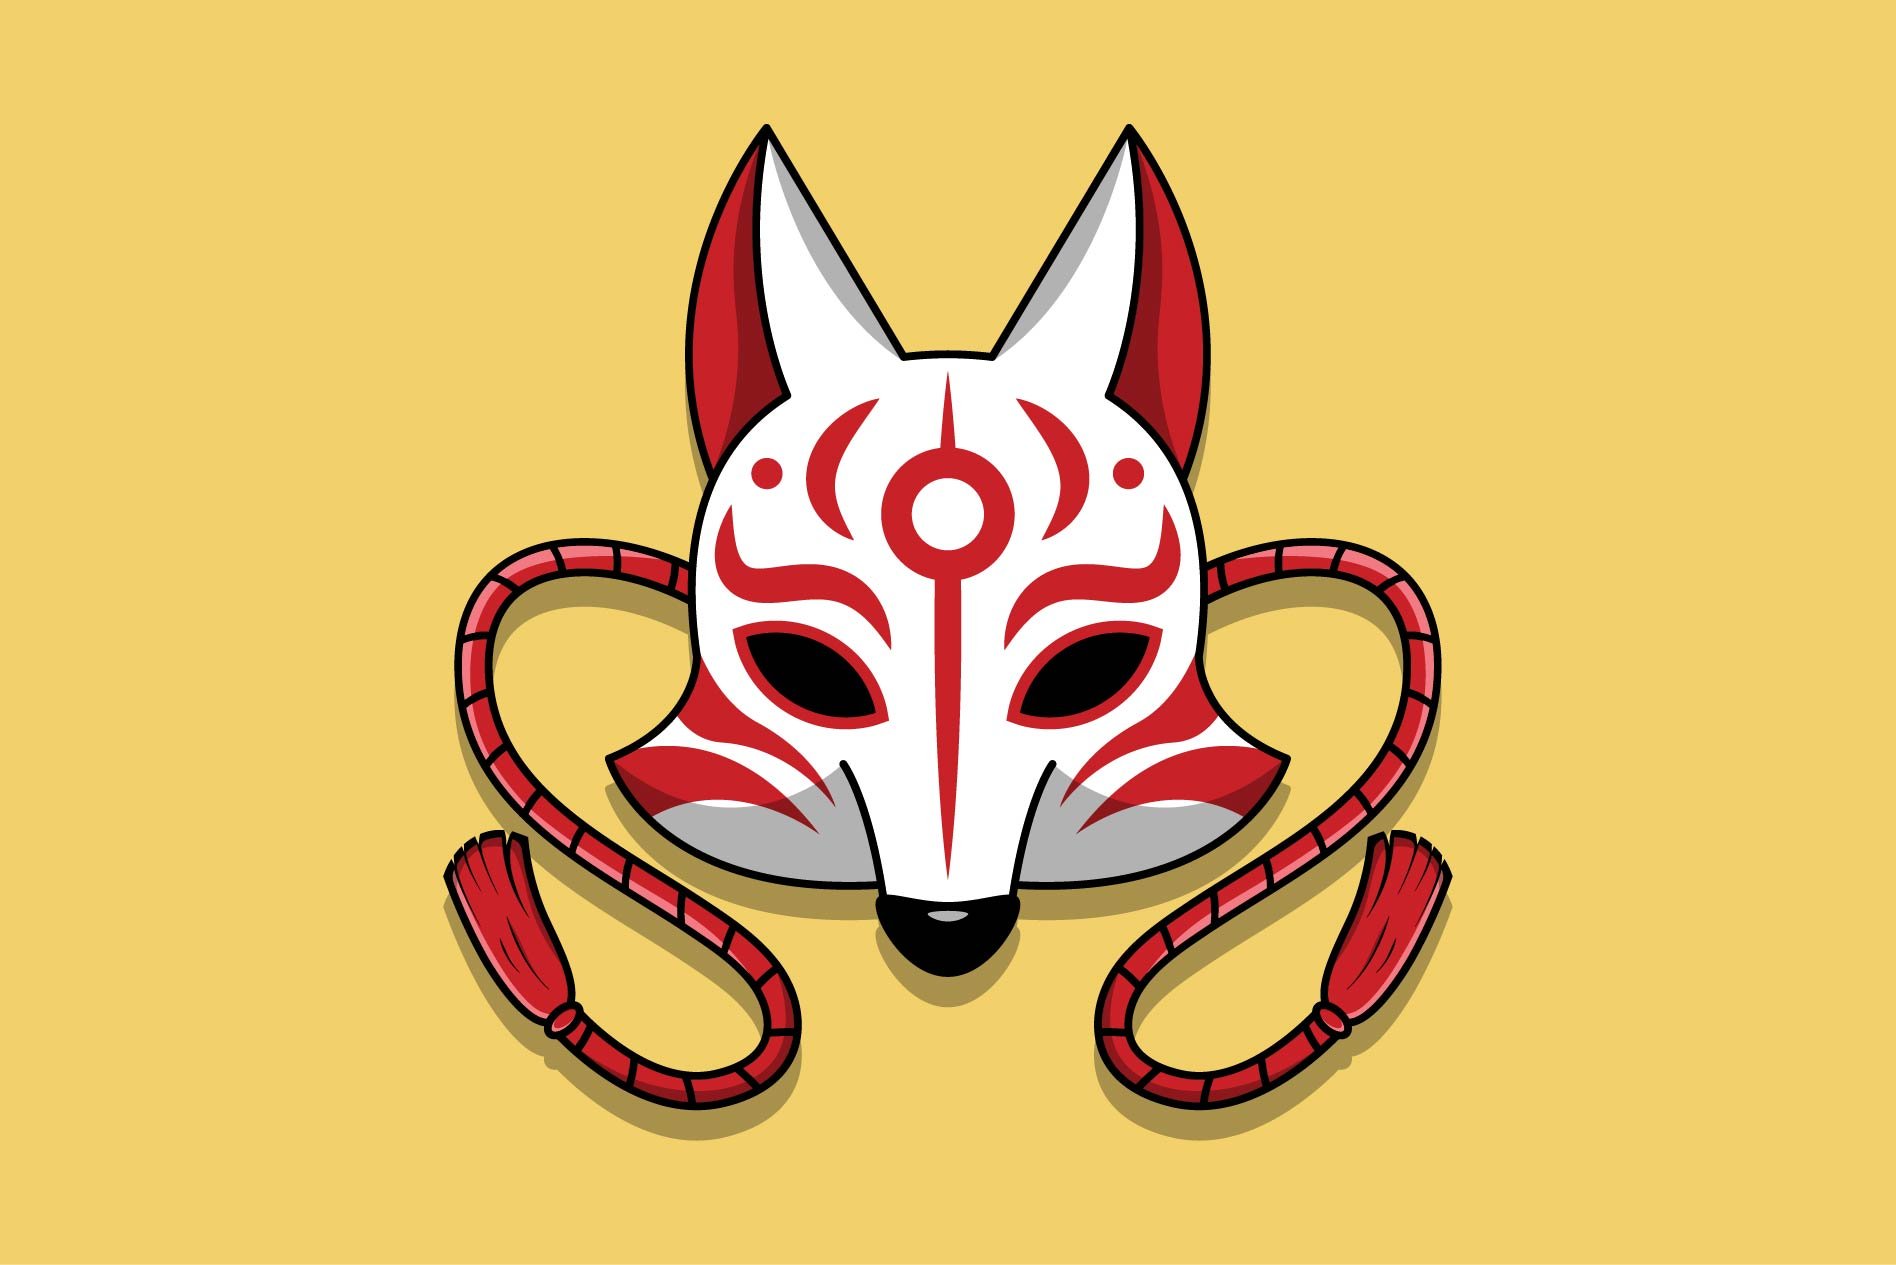 Japanese kitsune mask #46 cover image.